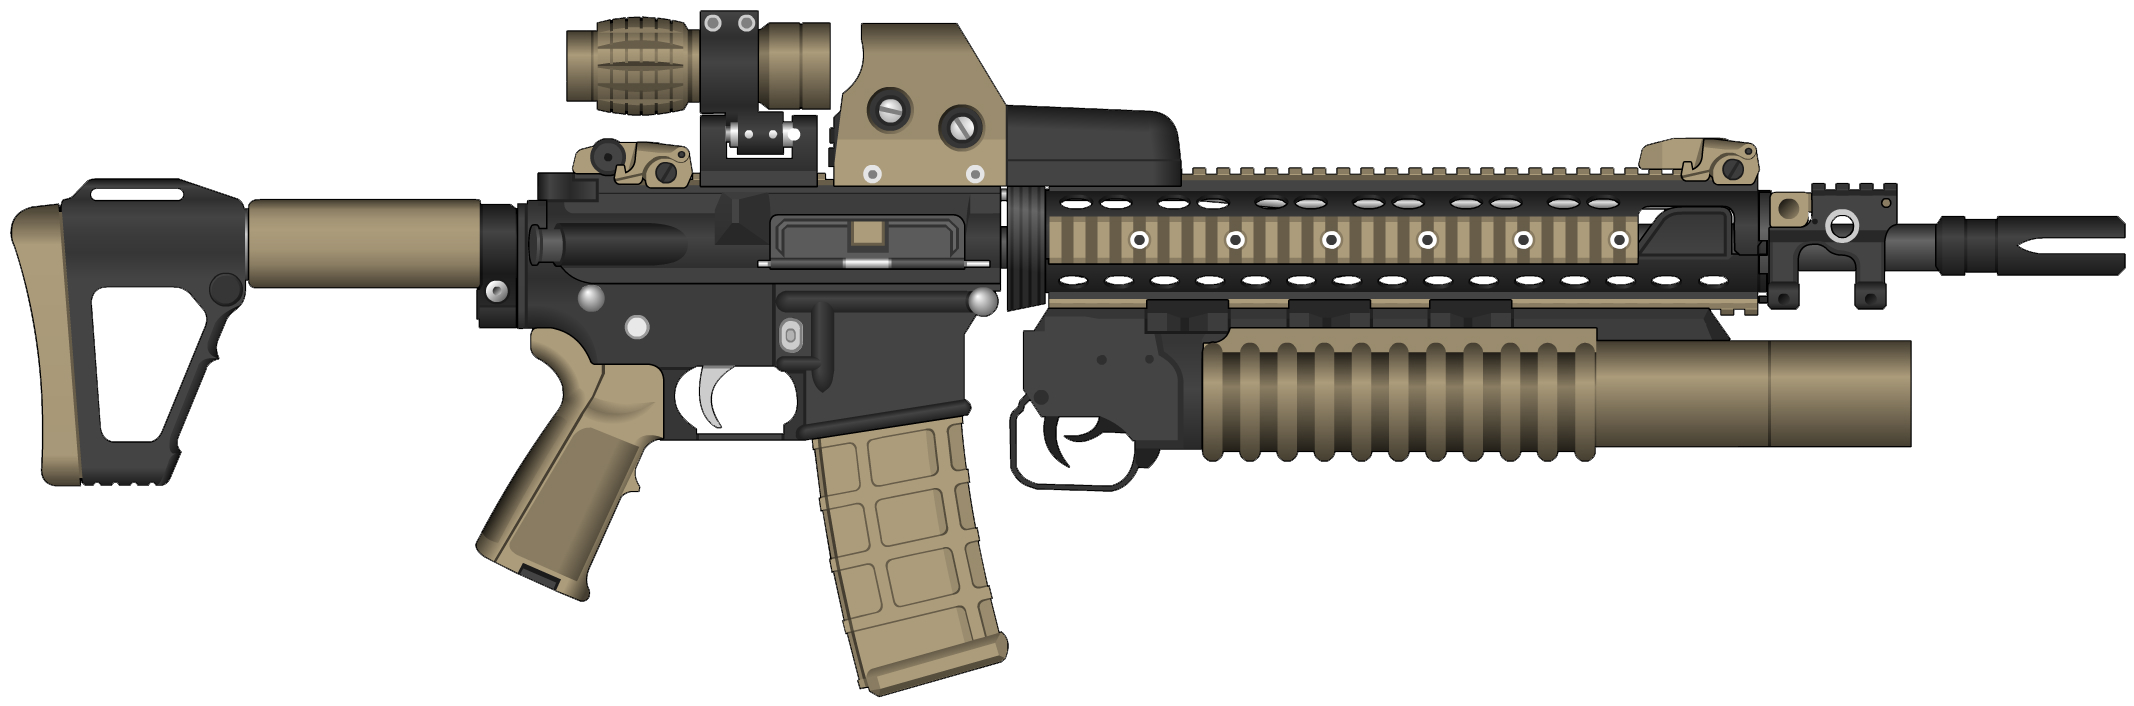 Assault Rifle HD PNG - 89539